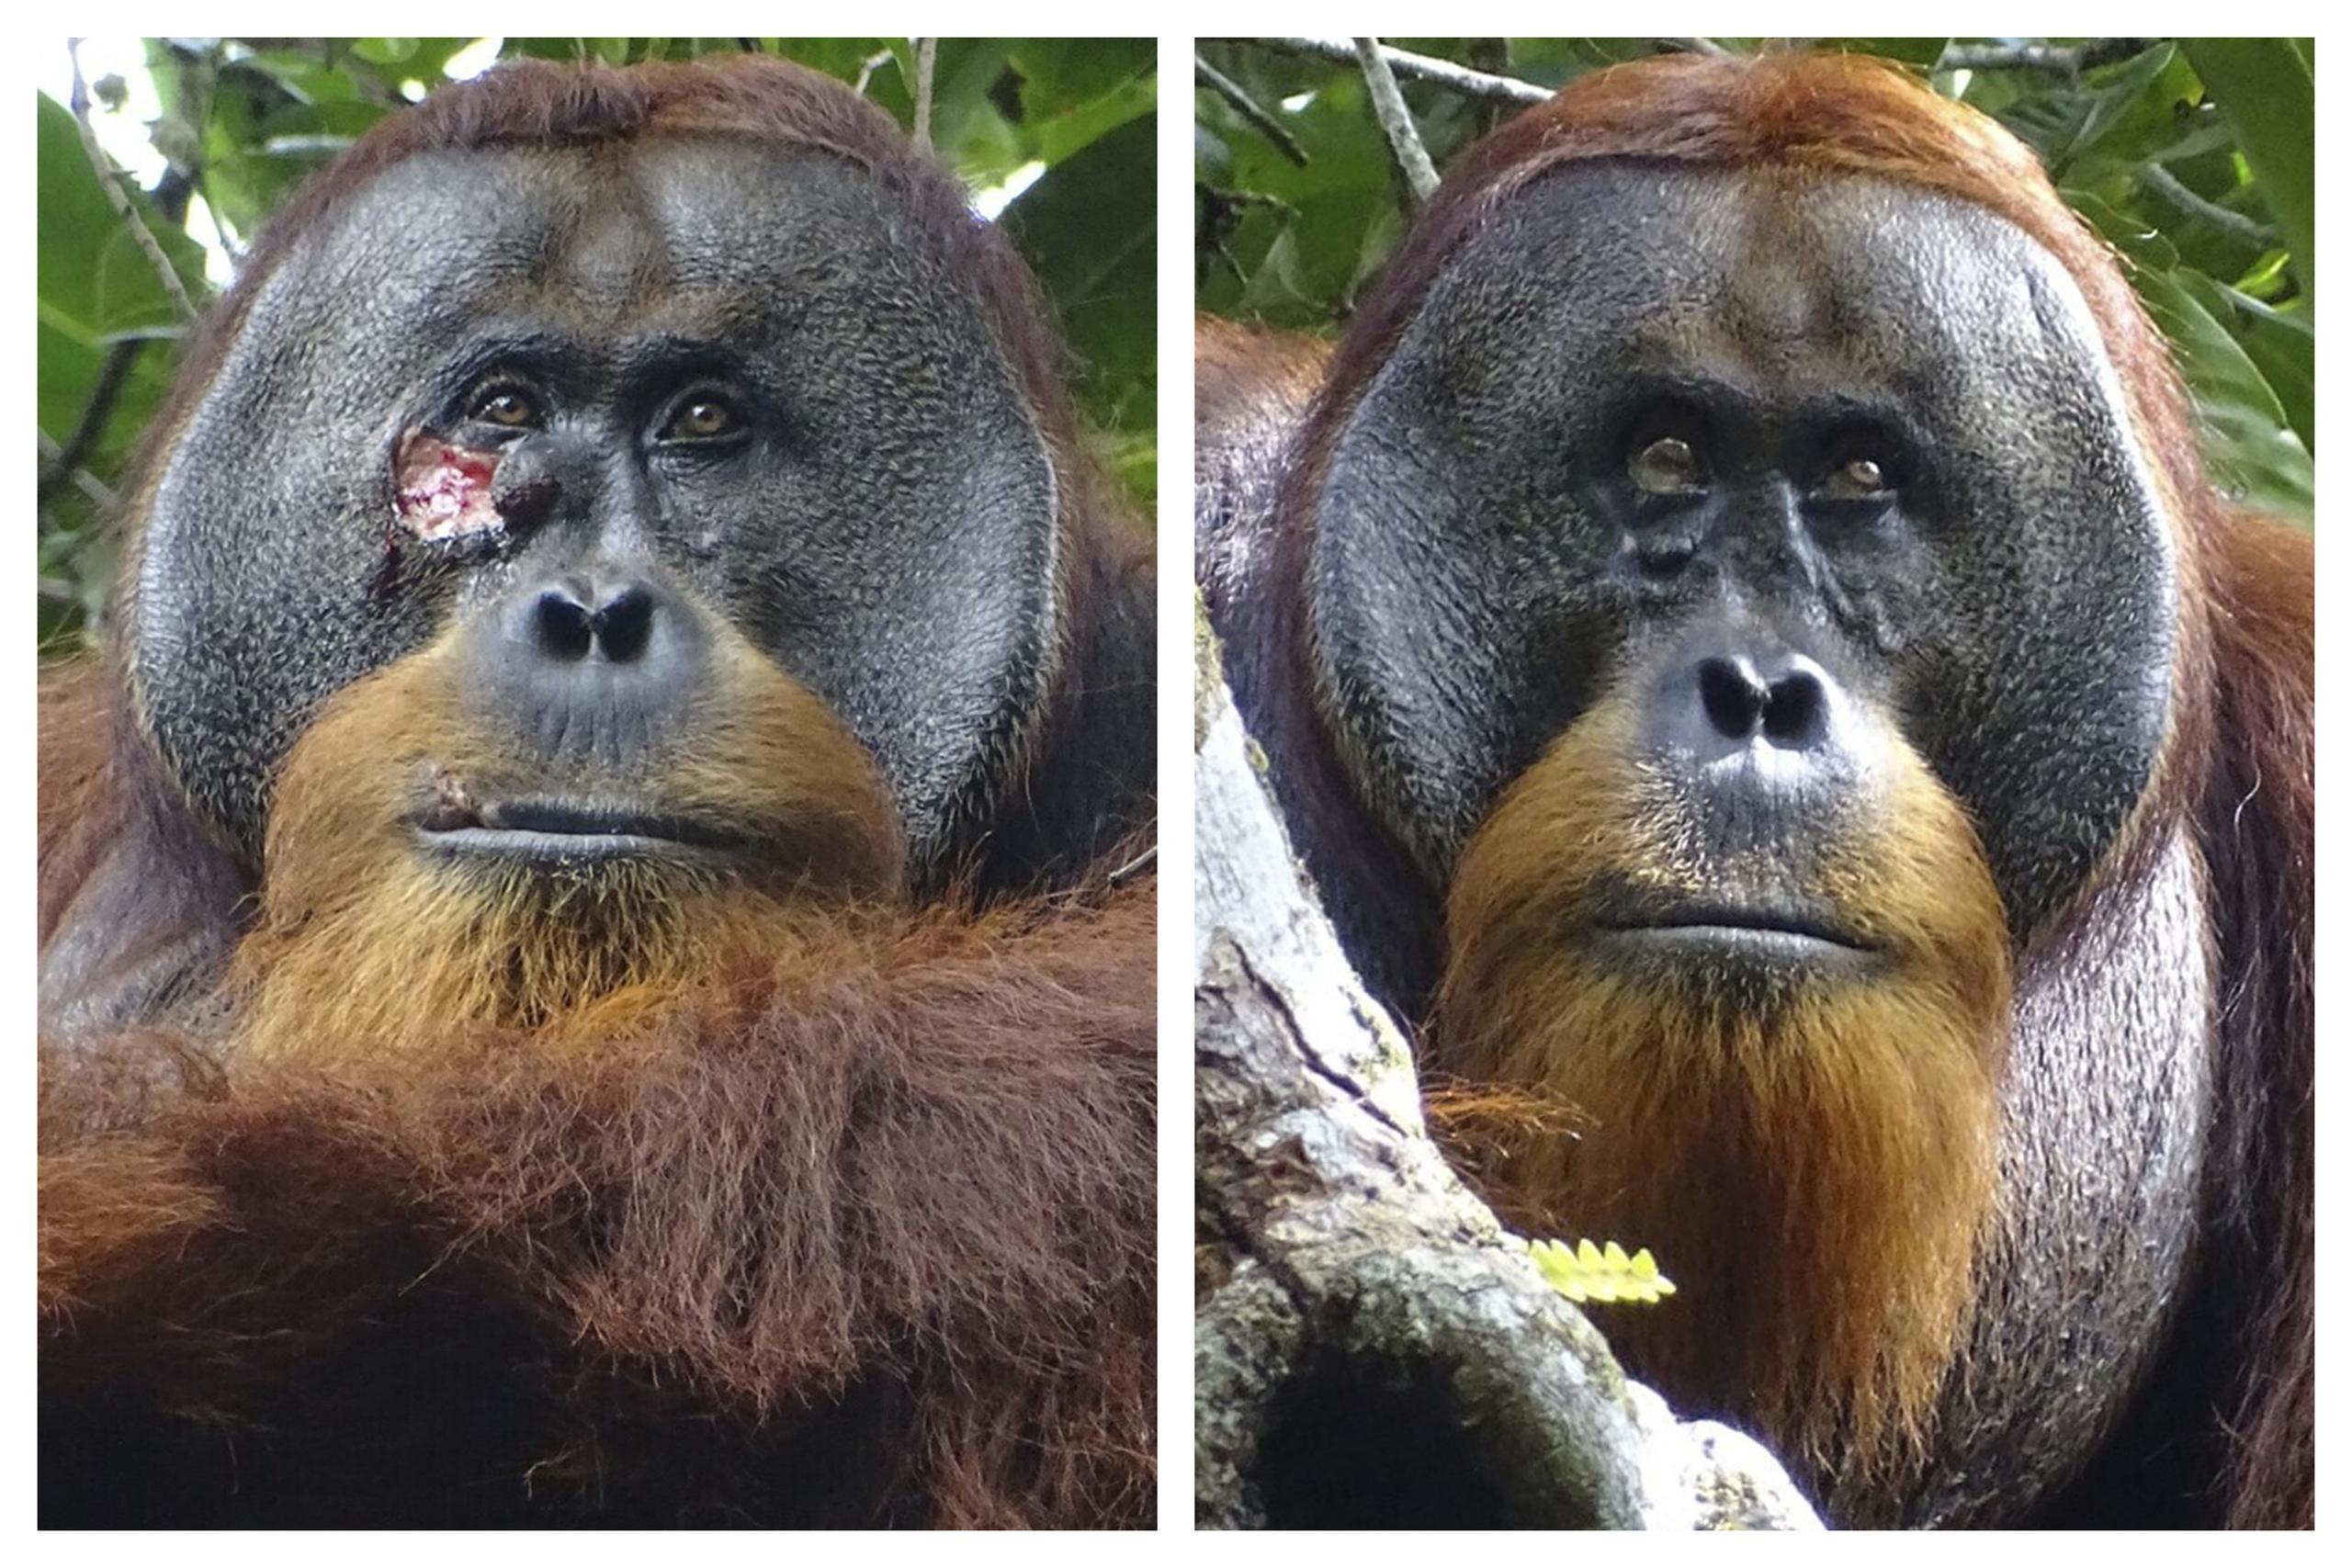 Los científicos creen que el orangutan conocido como Rakus, aprendió la técnica de automedicación, de otros orangutanes silvestres que viven fuera del área de estudio.